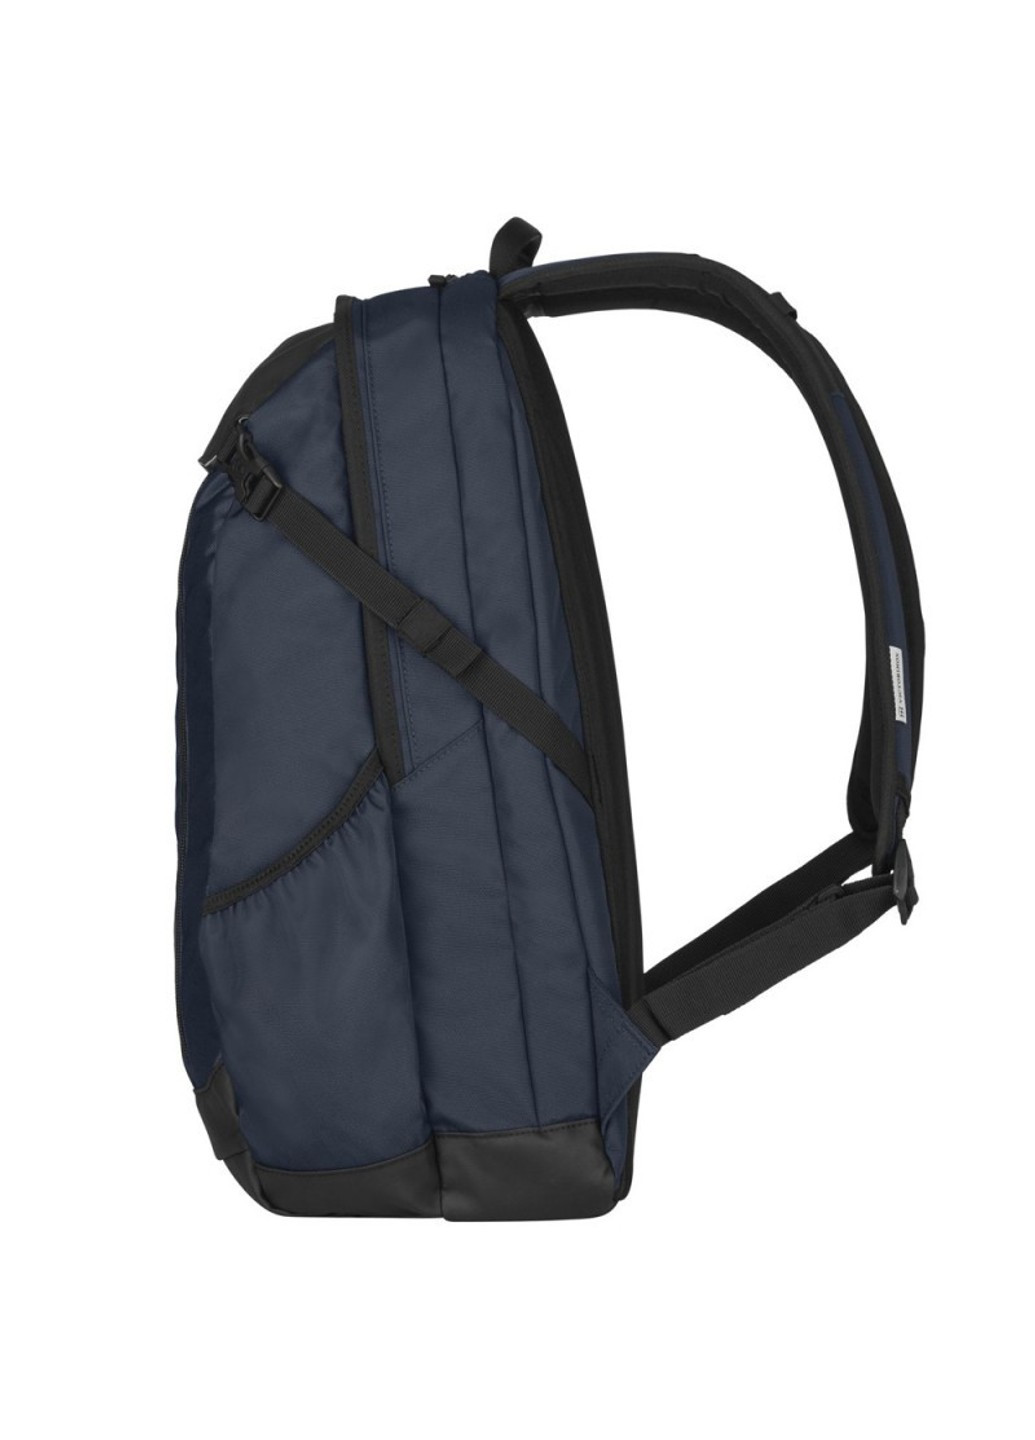 Рюкзак для ноутбука ALTMONT Original/Blue Vt606740 Victorinox Travel (262449713)